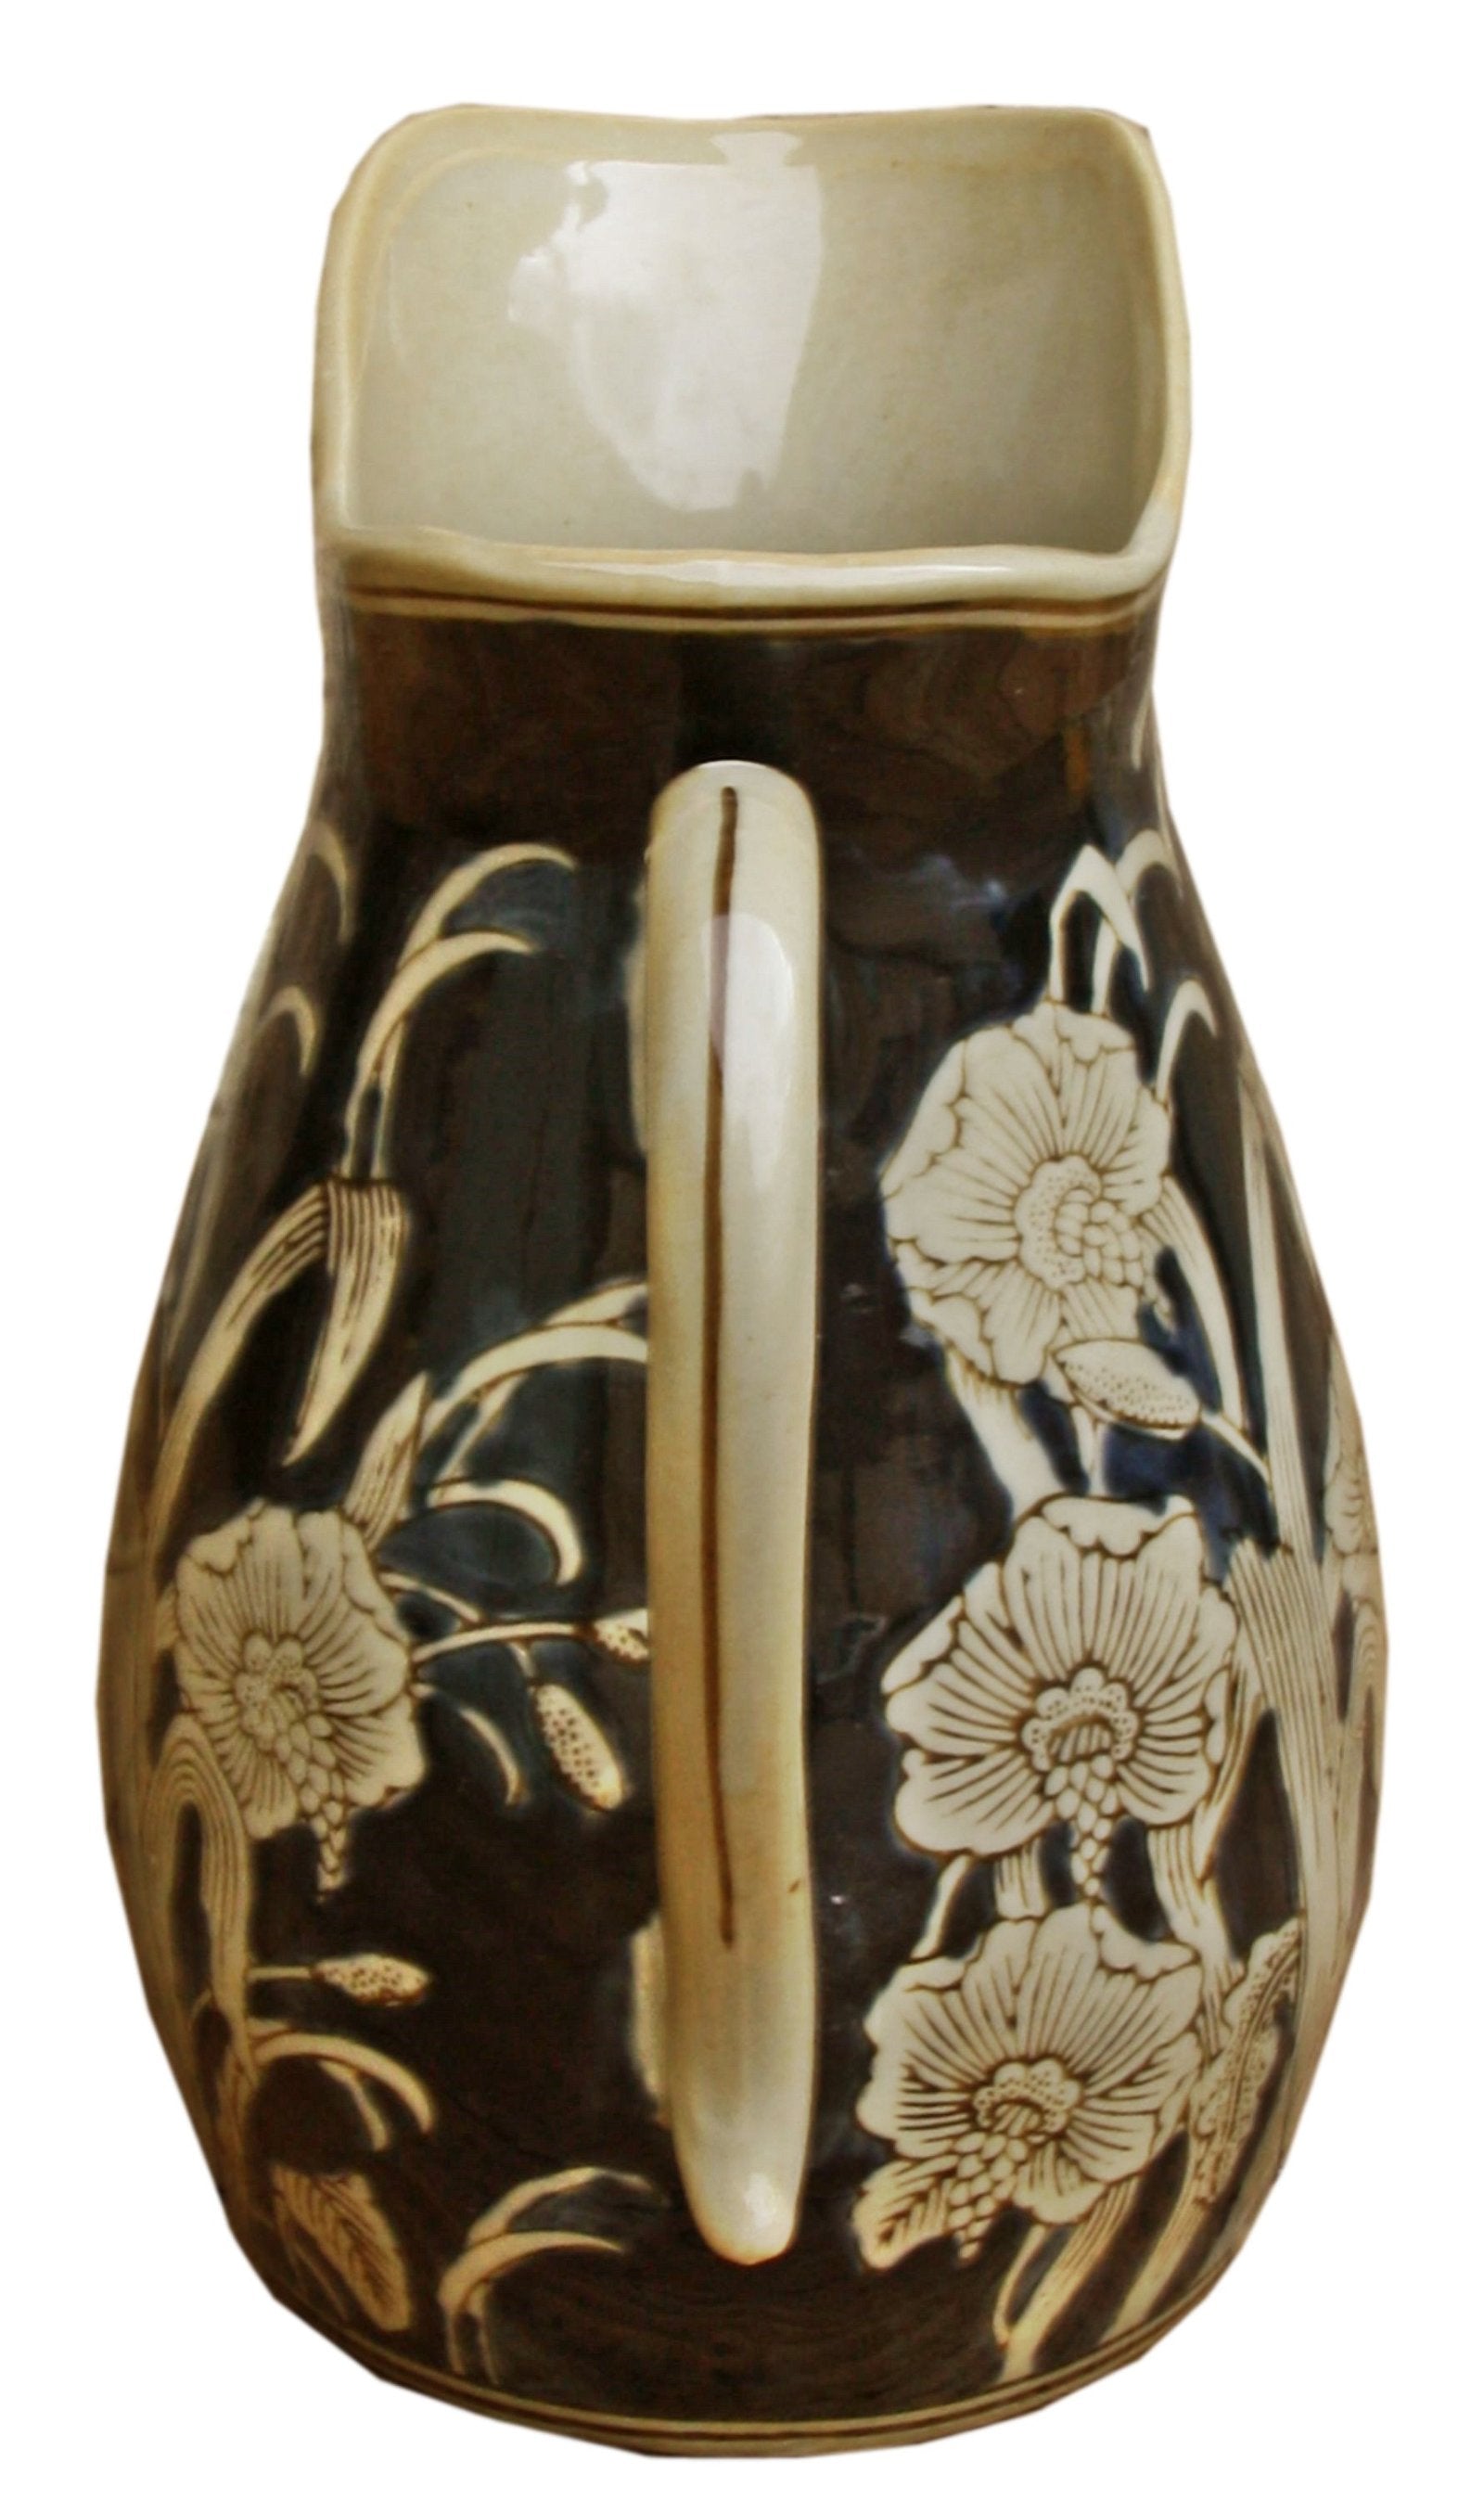 Ceramic Embossed Jug Style Vase, Regal Design